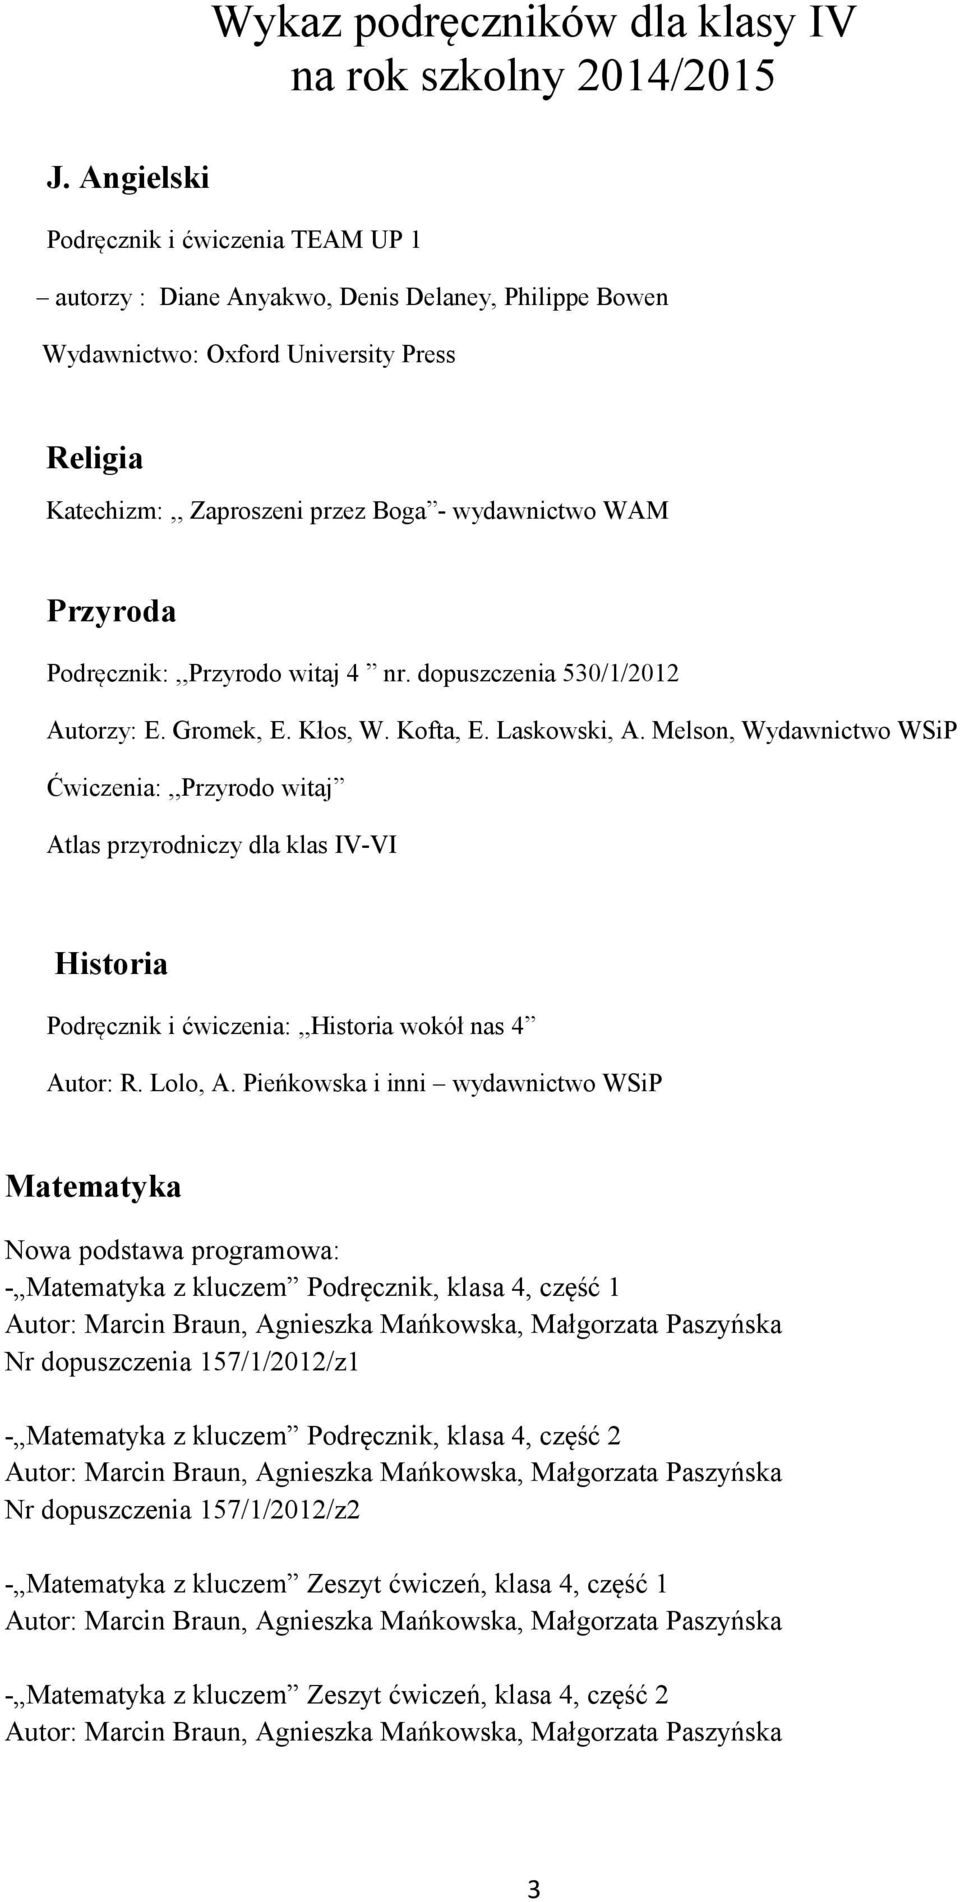 Przyroda Podręcznik:,,Przyrodo witaj 4 nr. dopuszczenia 530/1/2012 Autorzy: E. Gromek, E. Kłos, W. Kofta, E. Laskowski, A.